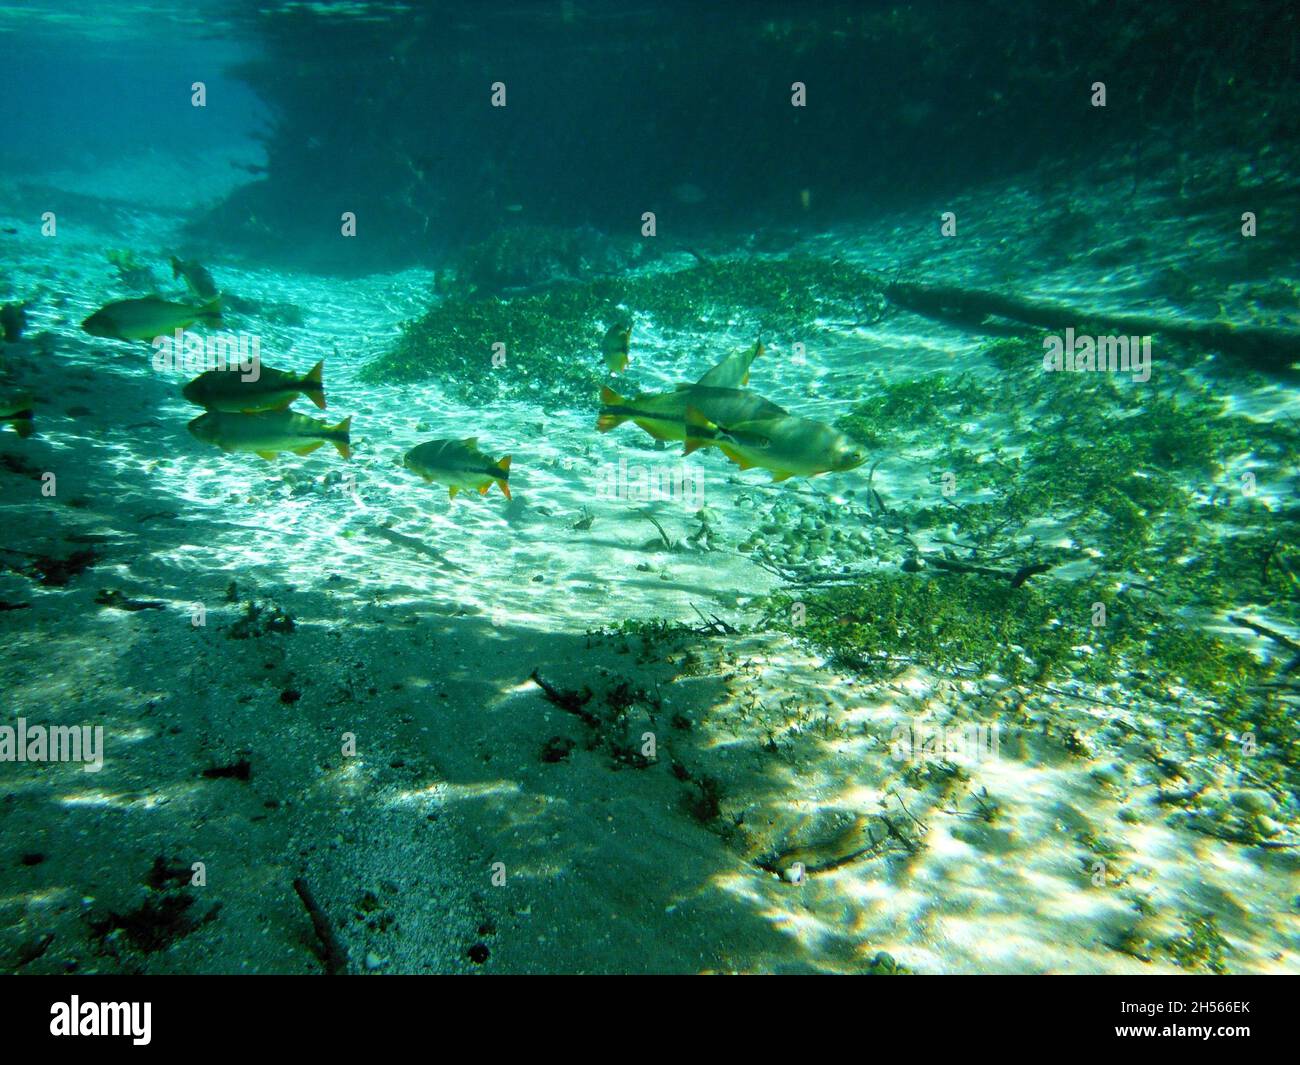 Eau claire, groupe de poissons nageant dans la rivière.Vue sur l'eau, le soleil illuminant le fond de la rivière et le poisson.Bonito, Brésil. Banque D'Images